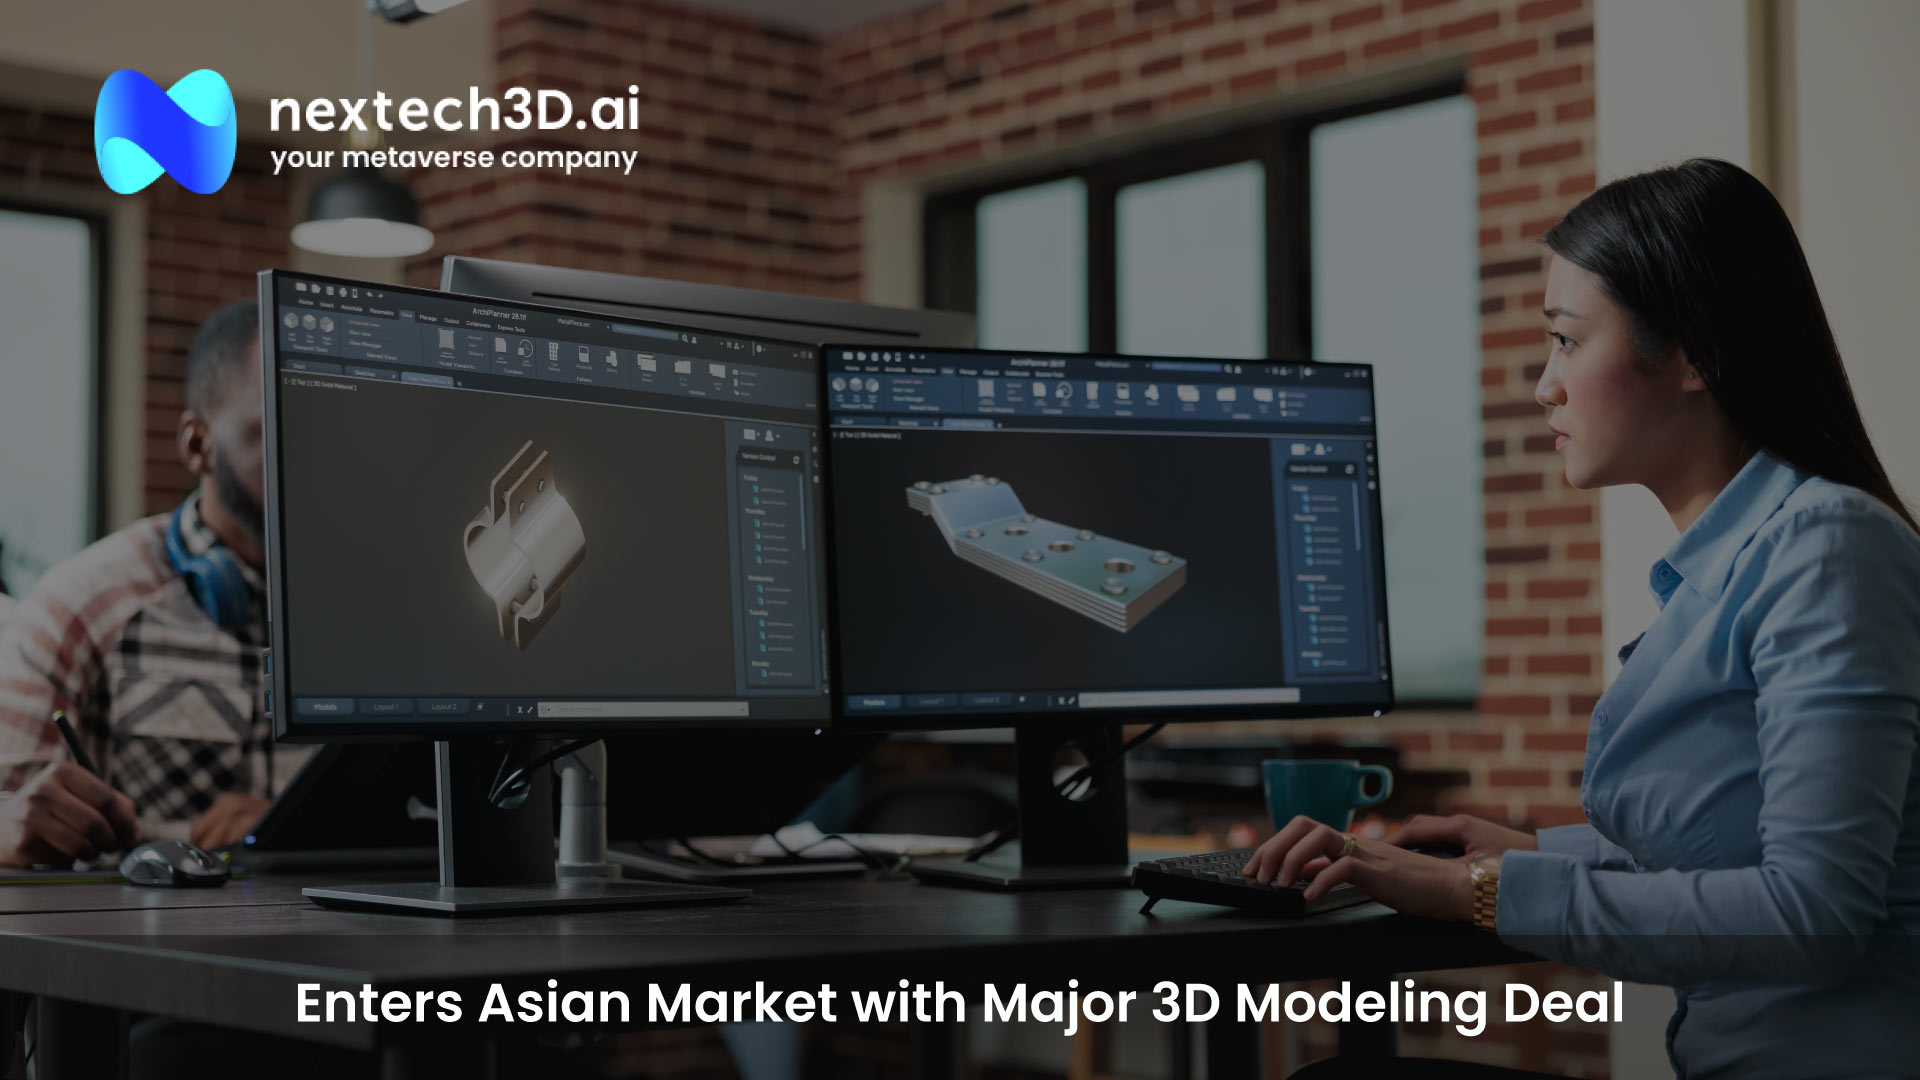 Nextech3D.ai Enters Asian Market with Major 3D Modeling Deal to Revolutionize E-commerce